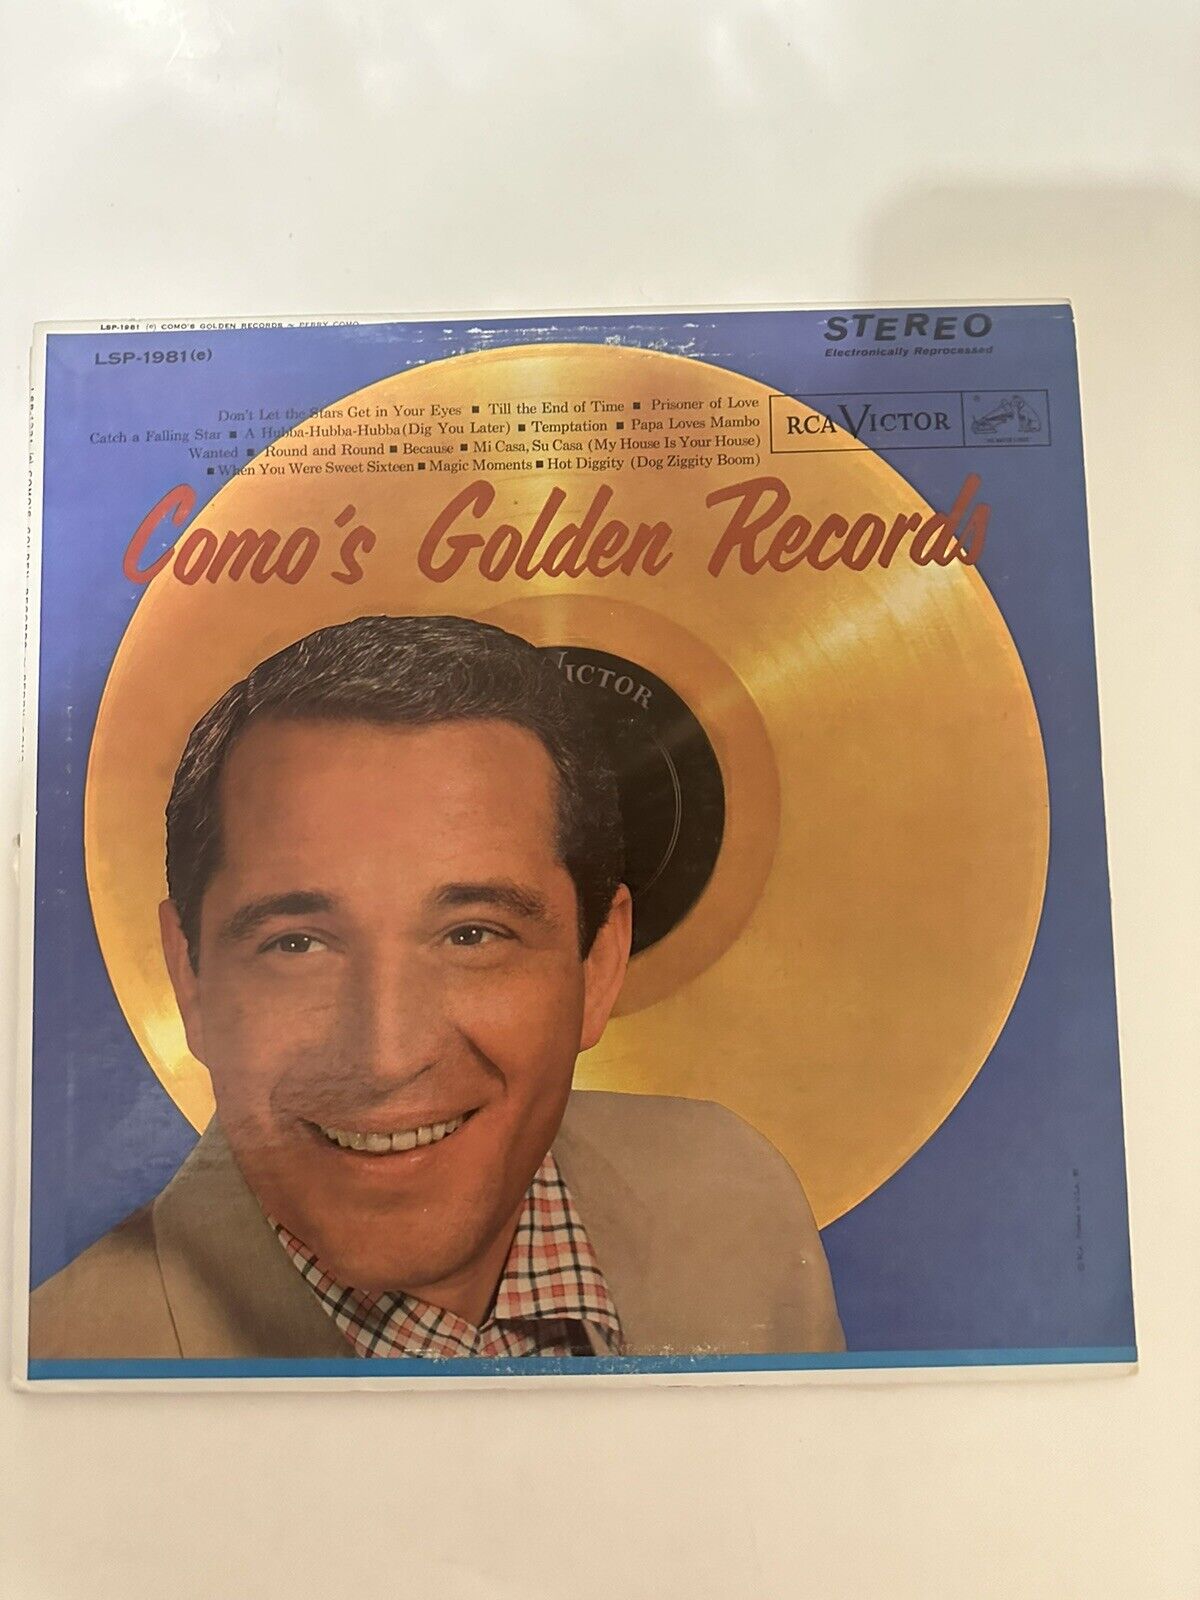 Perry Como “Como’s Golden Records” Vinyl Album LSP-1981(e) Used Vinyl